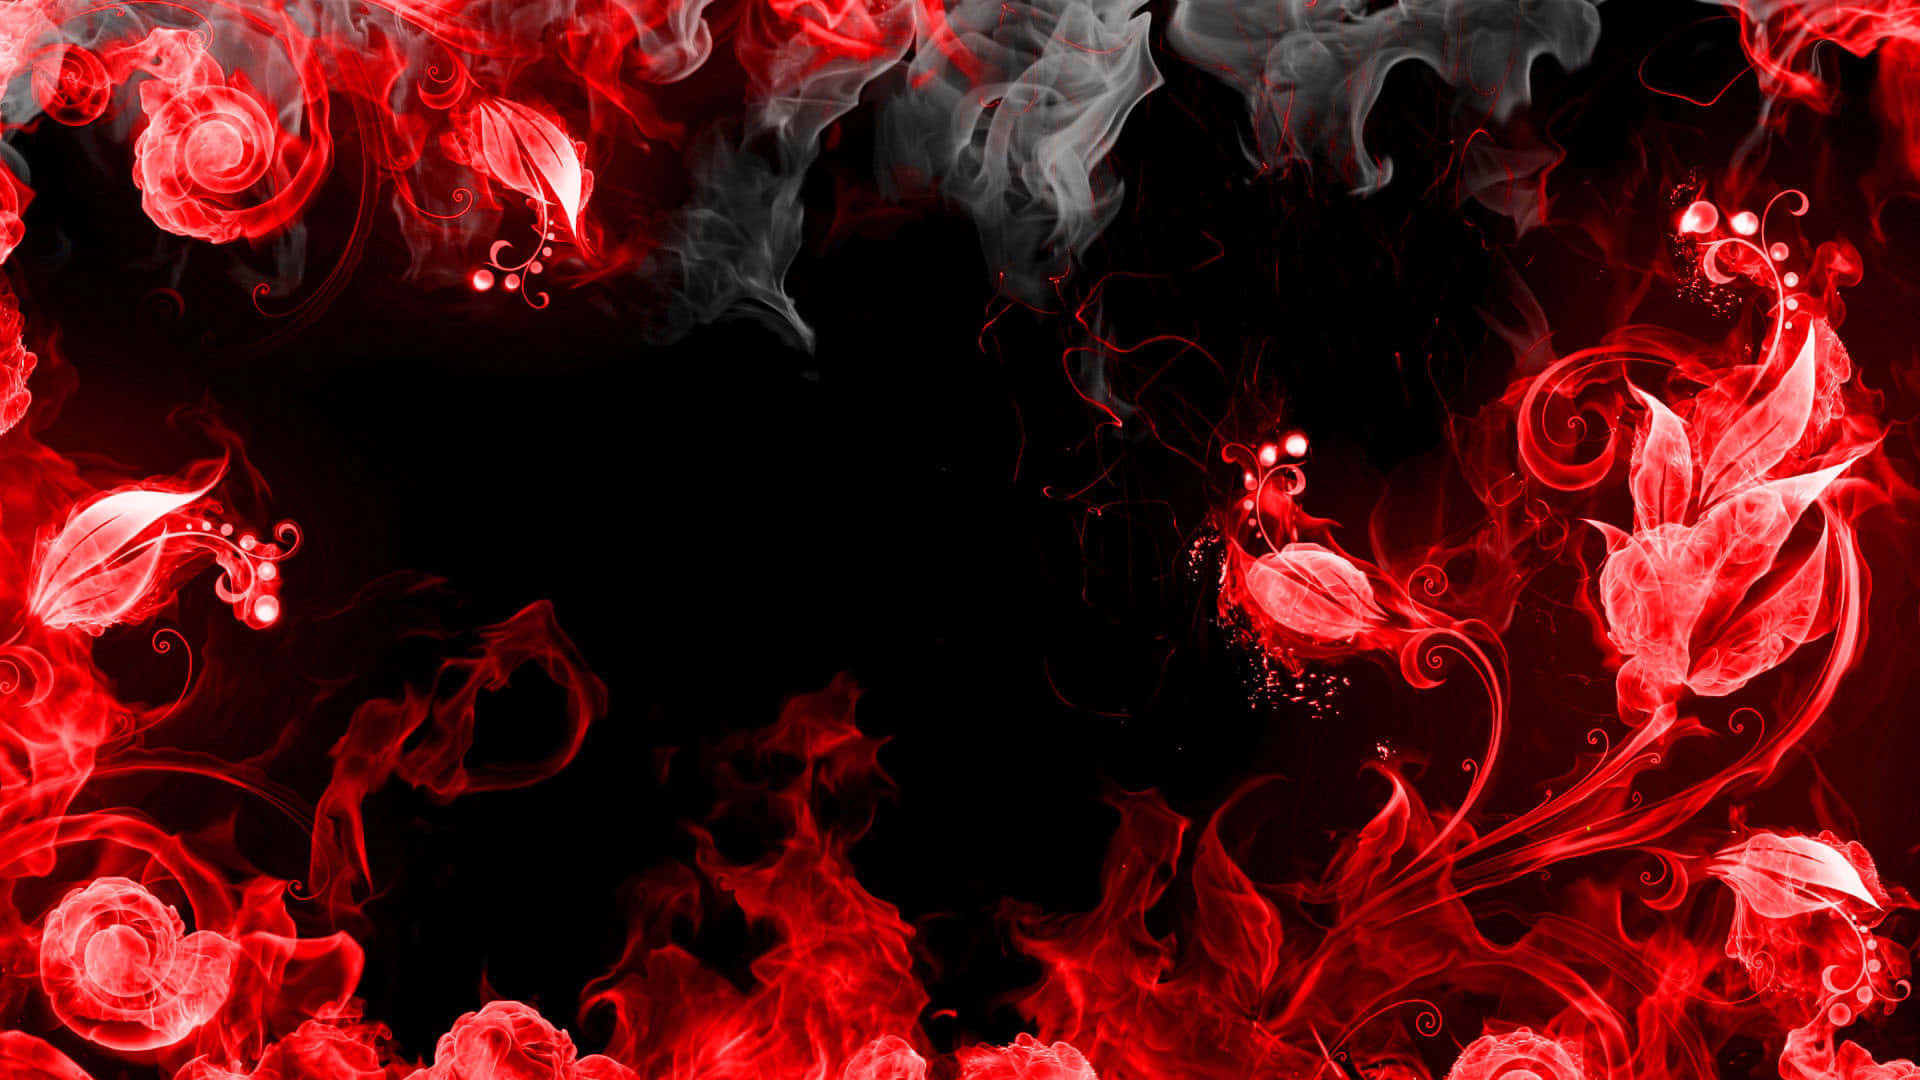 Fettgedrucktes,schwarz-rotes Kontrastreiches Muster